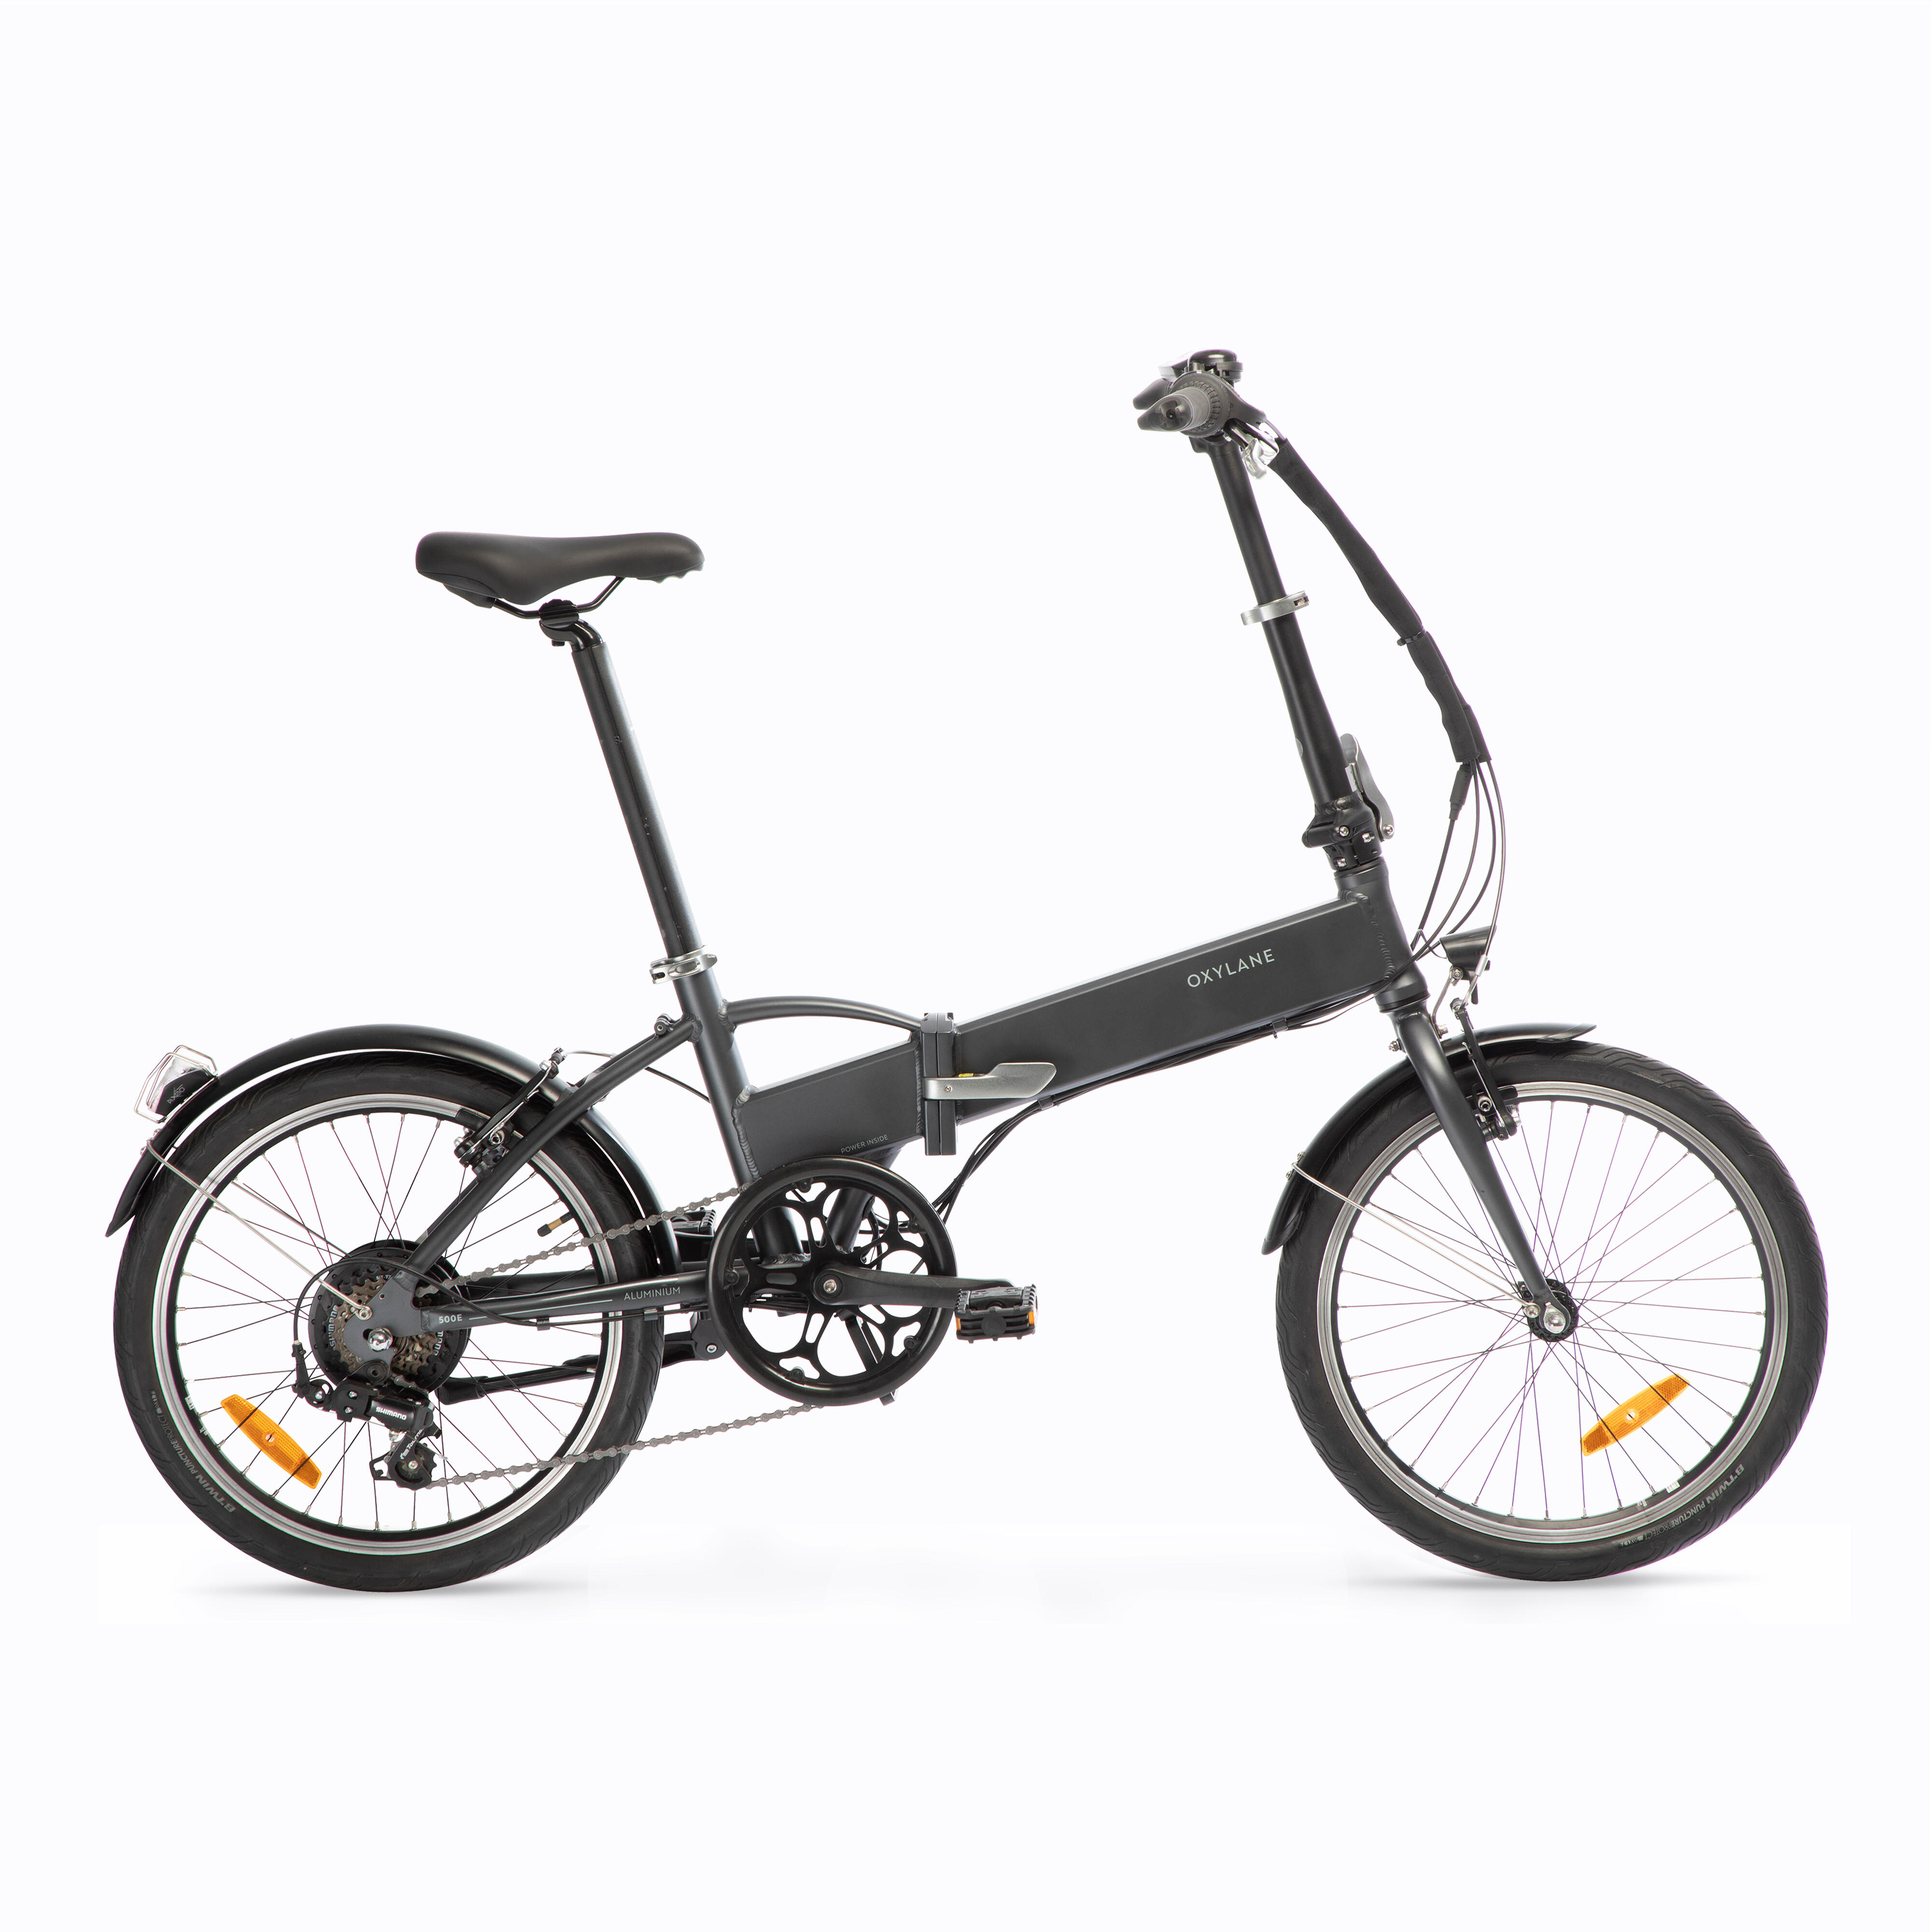 Bicicletă pliabilă cu asistență electrică TILT 500 E Gri-Negru BTWIN